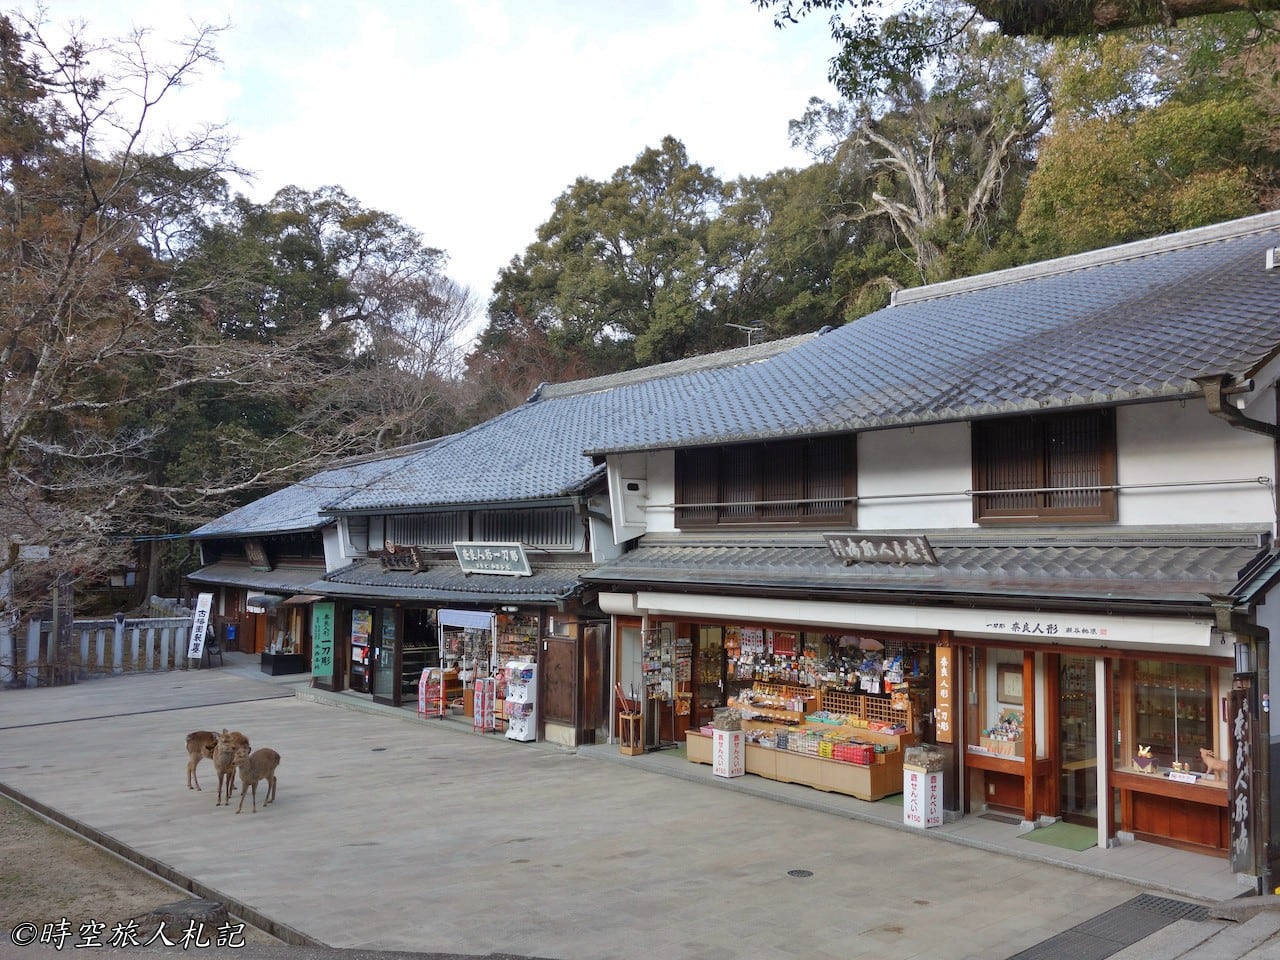 奈良,奈良一日遊,奈良景點 25